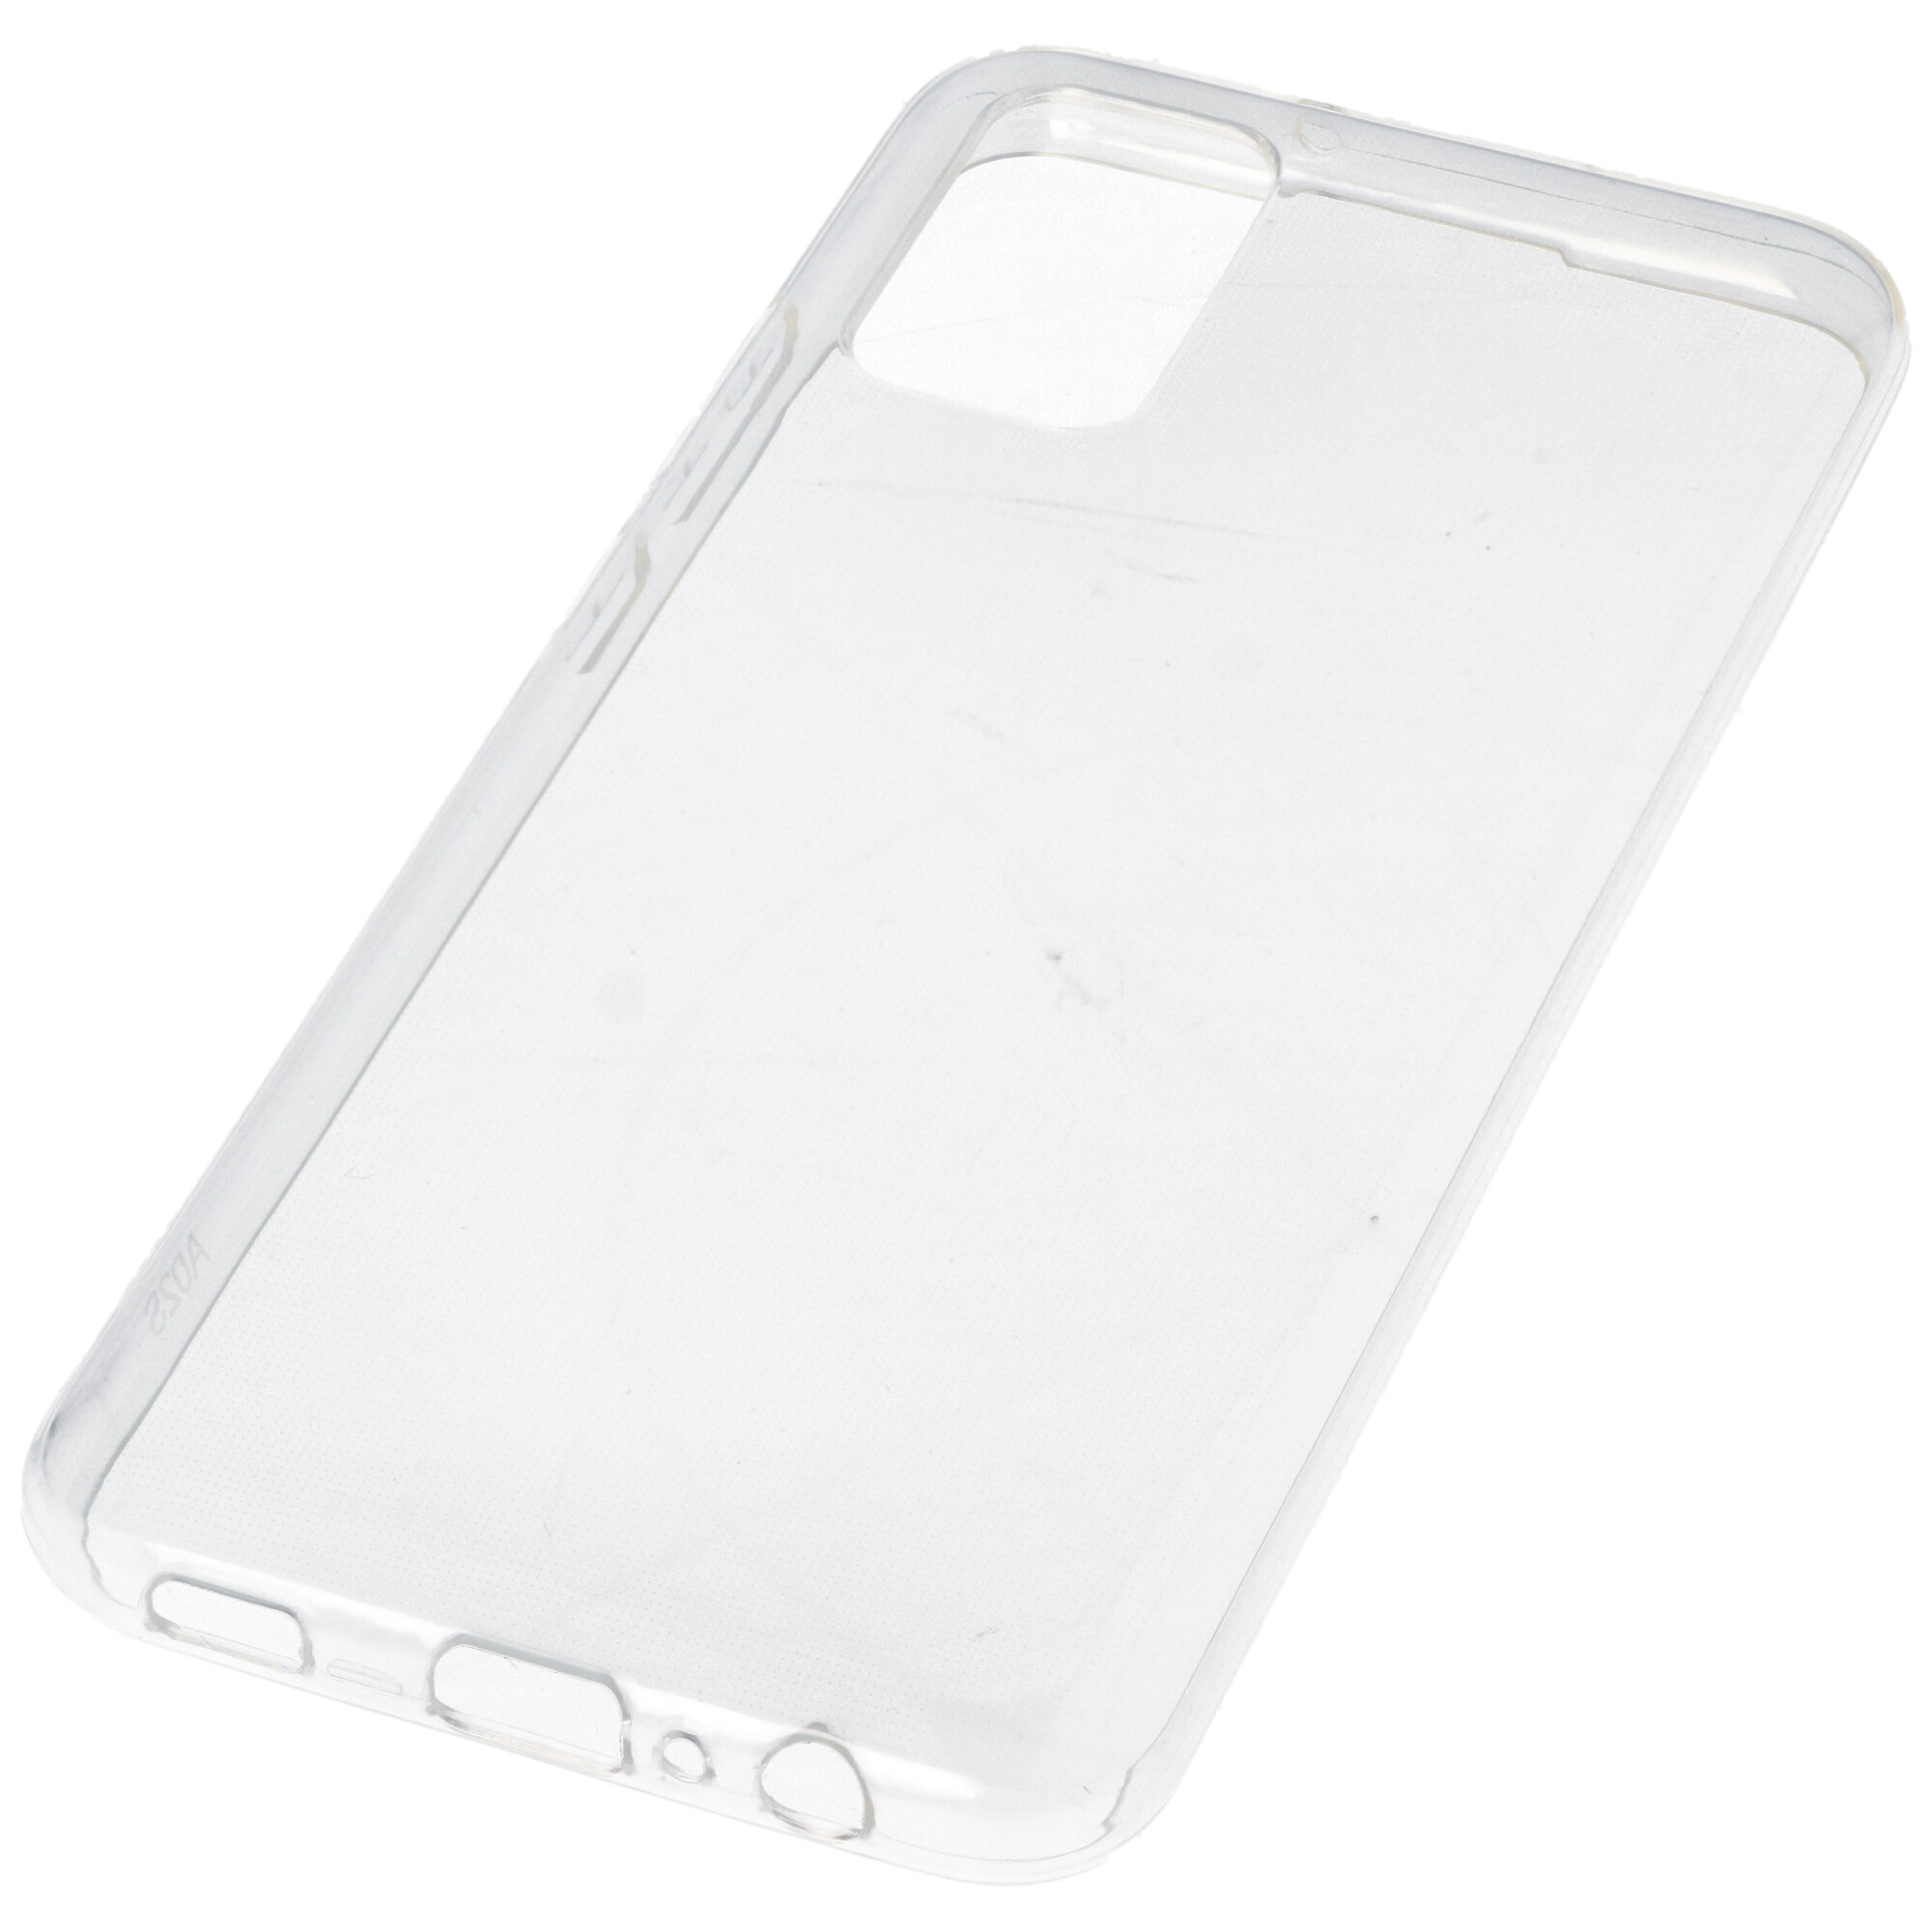 Hülle passend für Samsung Galaxy A02 S - transparente Schutzhülle, Anti-Gelb Luftkissen Fallschutz Silikon Handyhülle robustes TPU Case